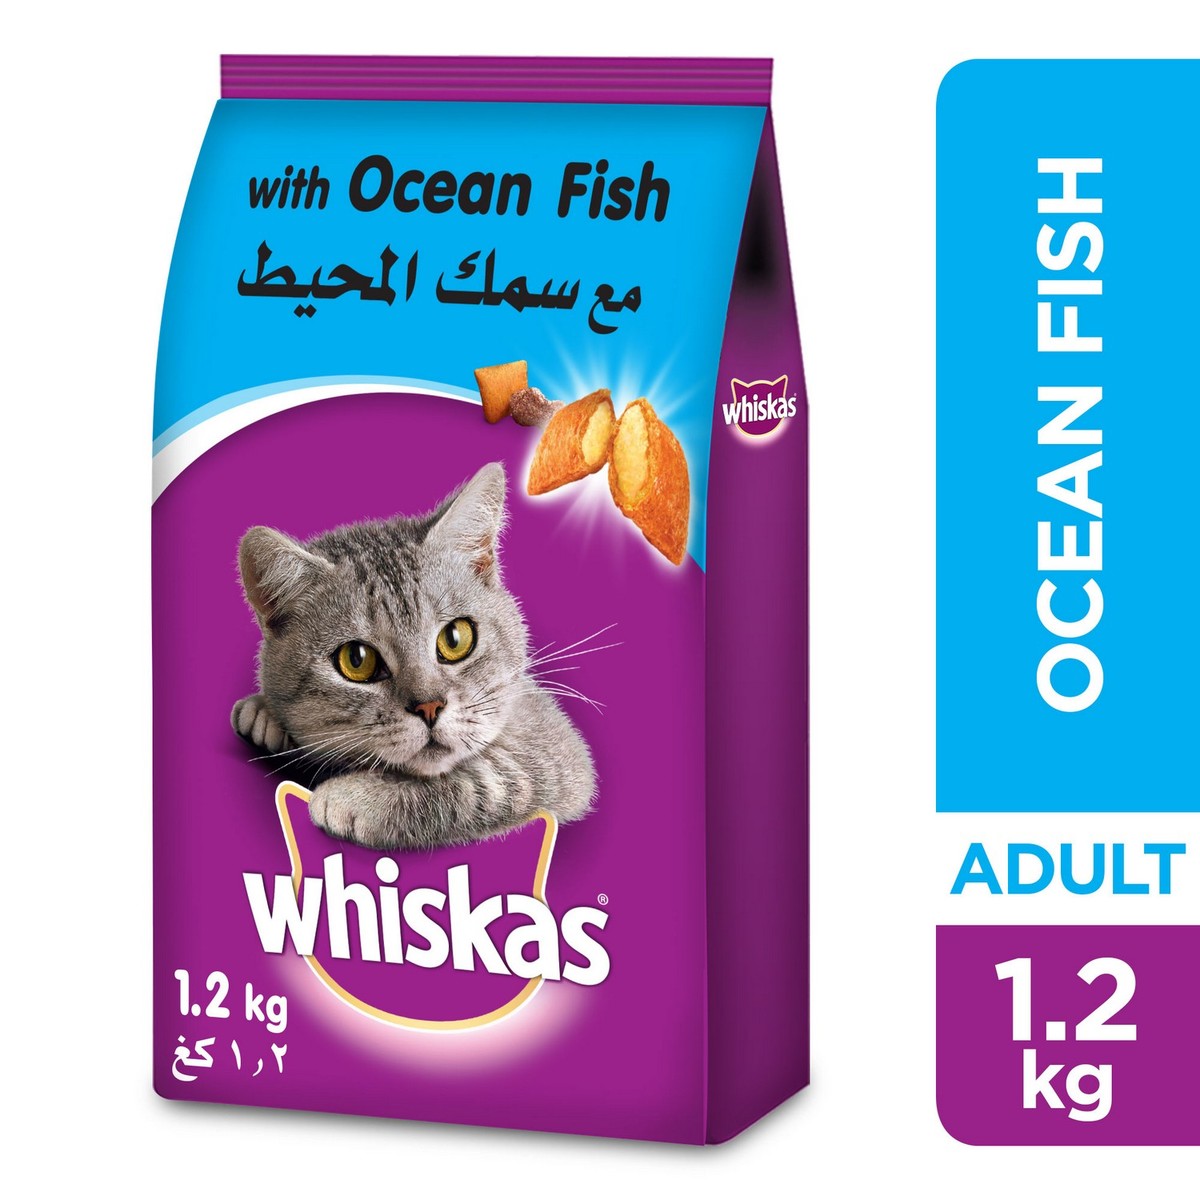 Champagne Verlating Agrarisch Whiskas® Ocean Fish Dry Food Adult 1+ years 1.2kg | Cat Food | Lulu KSA